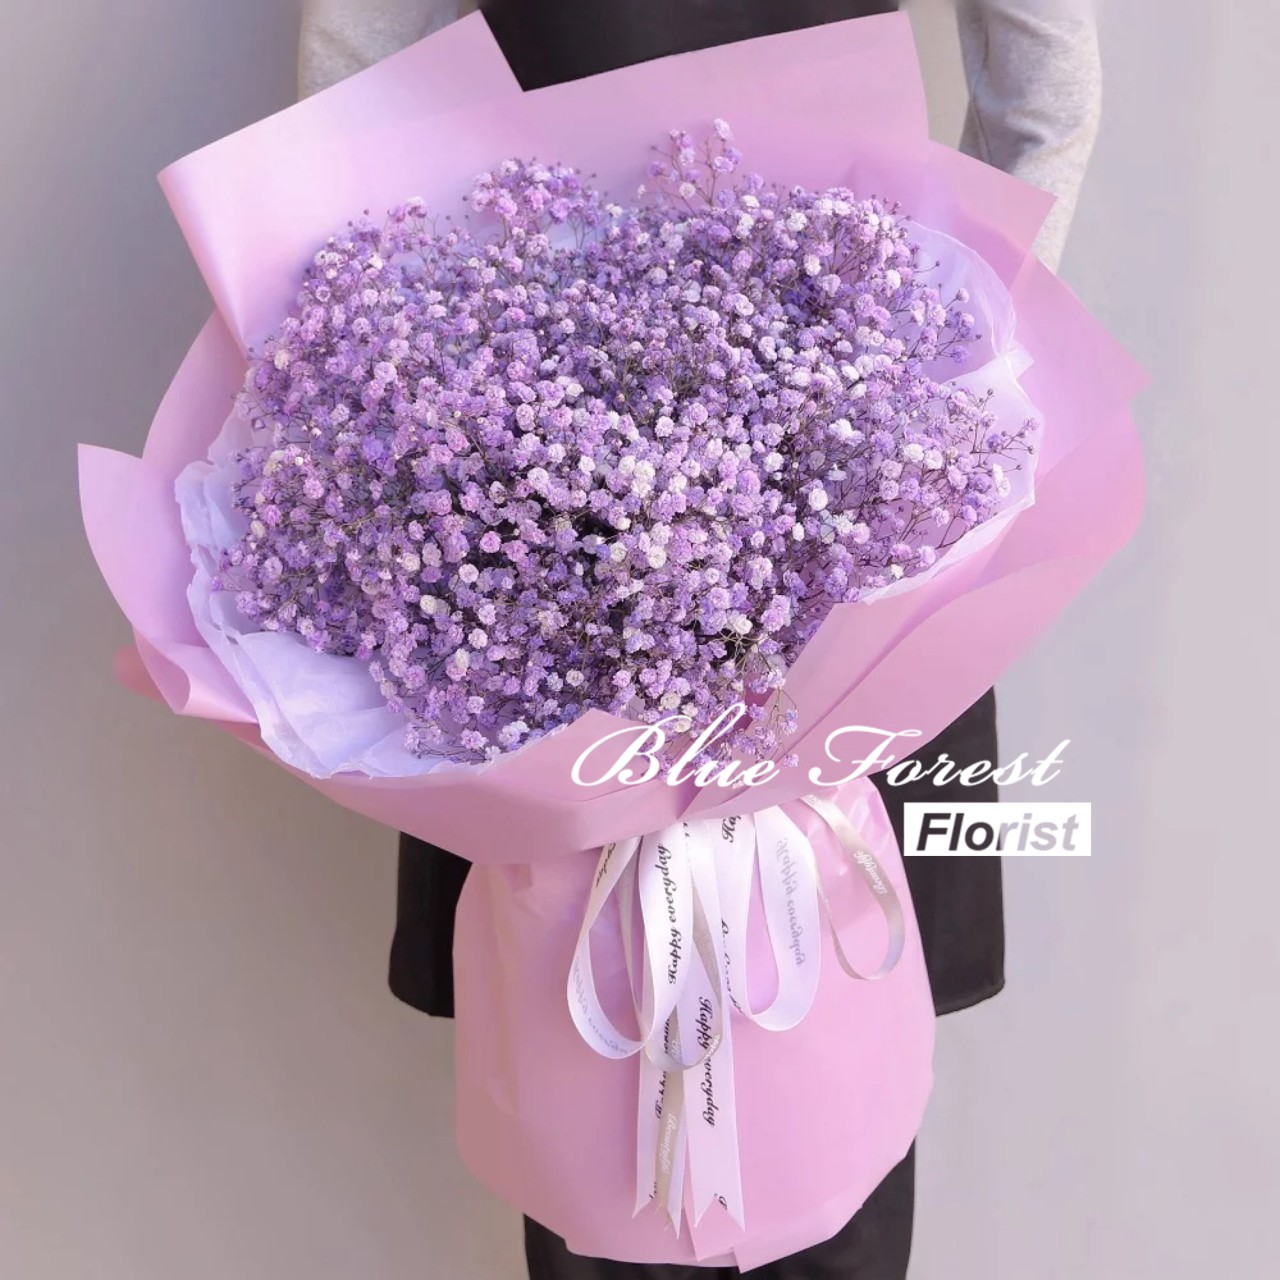 Light Purple Color Baby S Breath Bouquet Big Size Blue Forest Florist